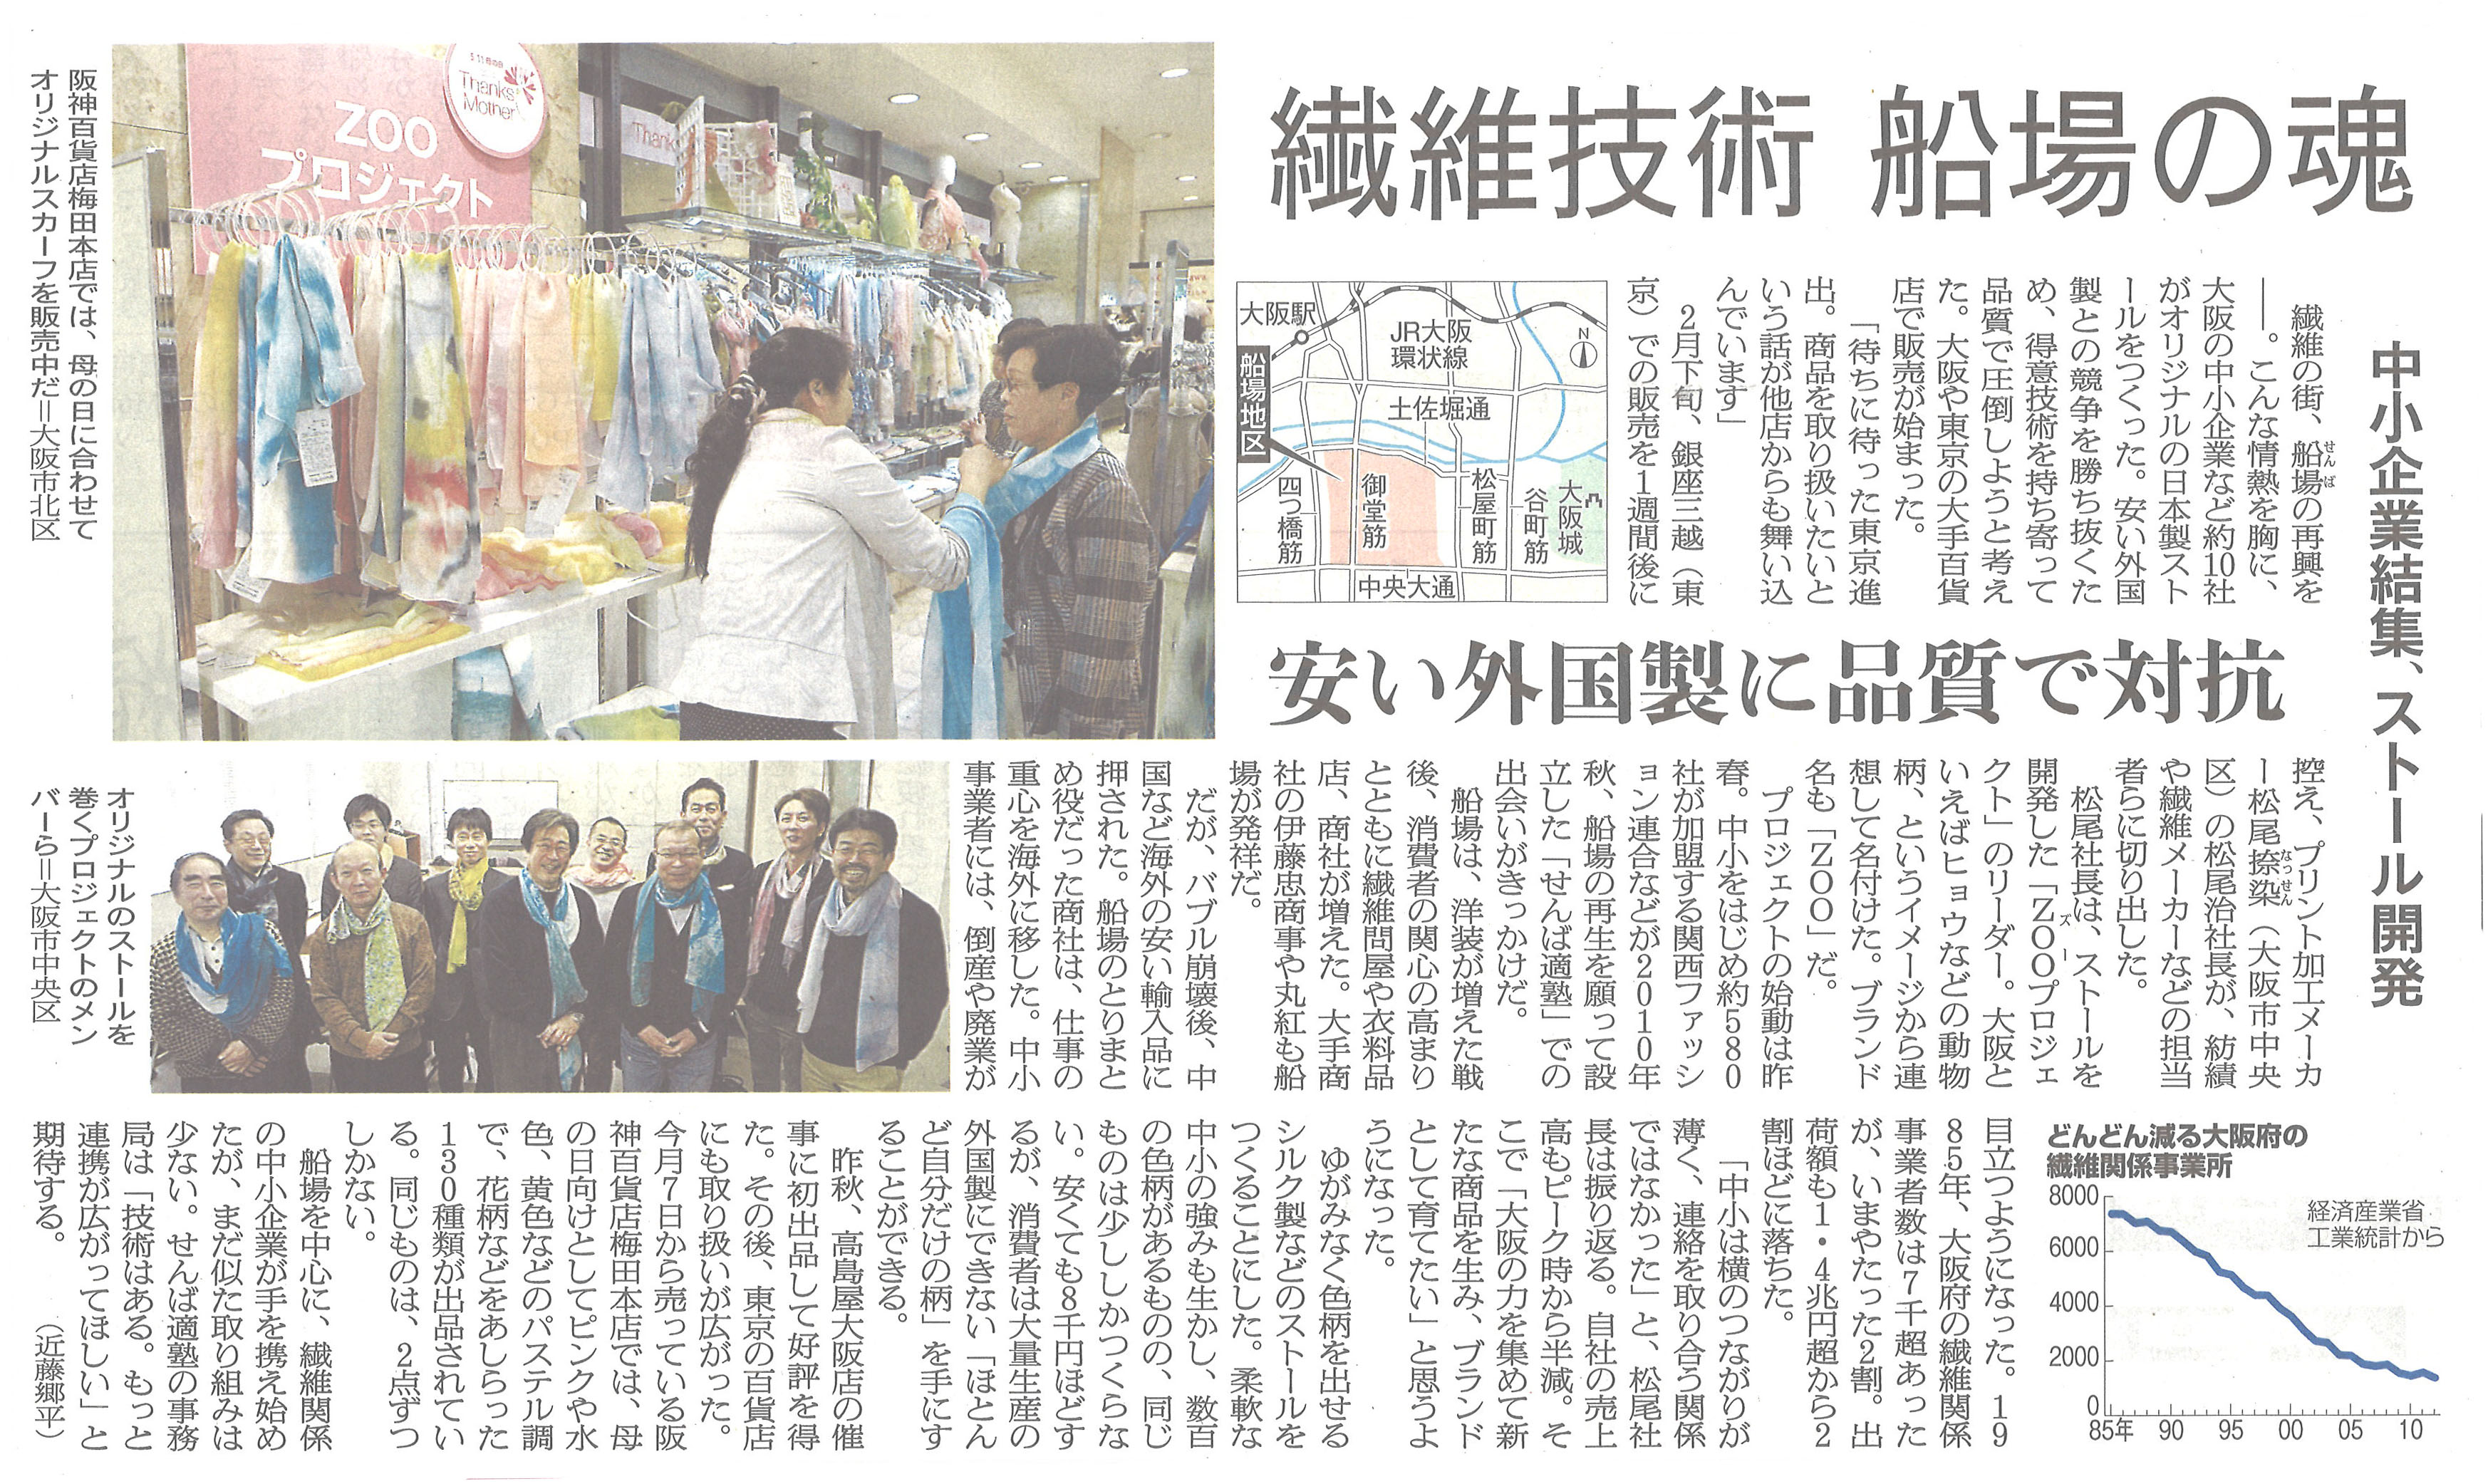 2014/5/8 「せんば適塾」Zoo Project が朝日新聞に掲載されました。